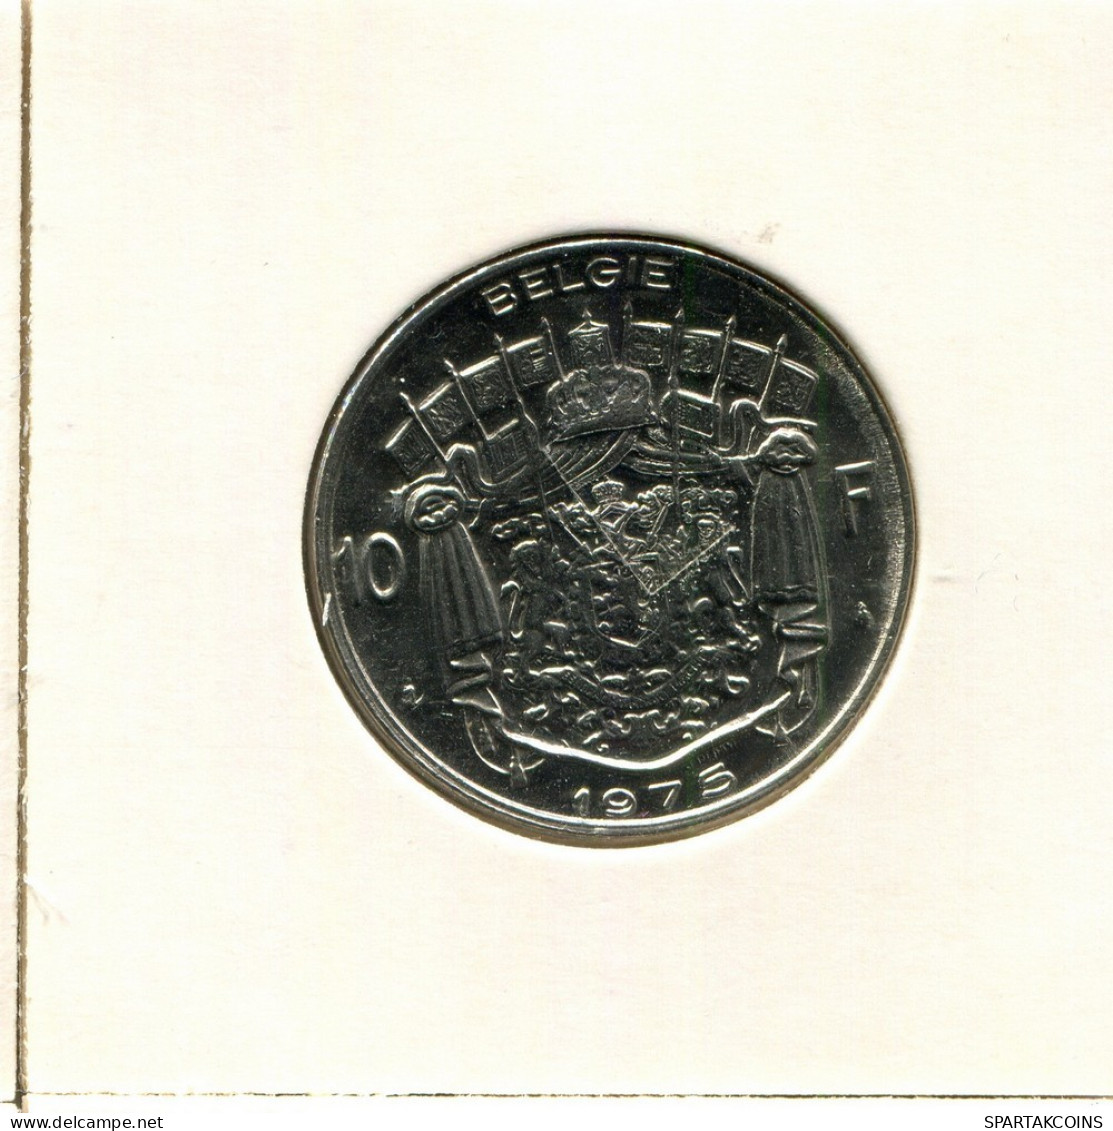 10 FRANCS 1975 DUTCH Text BELGIUM Coin #BB240.U.A - 10 Frank